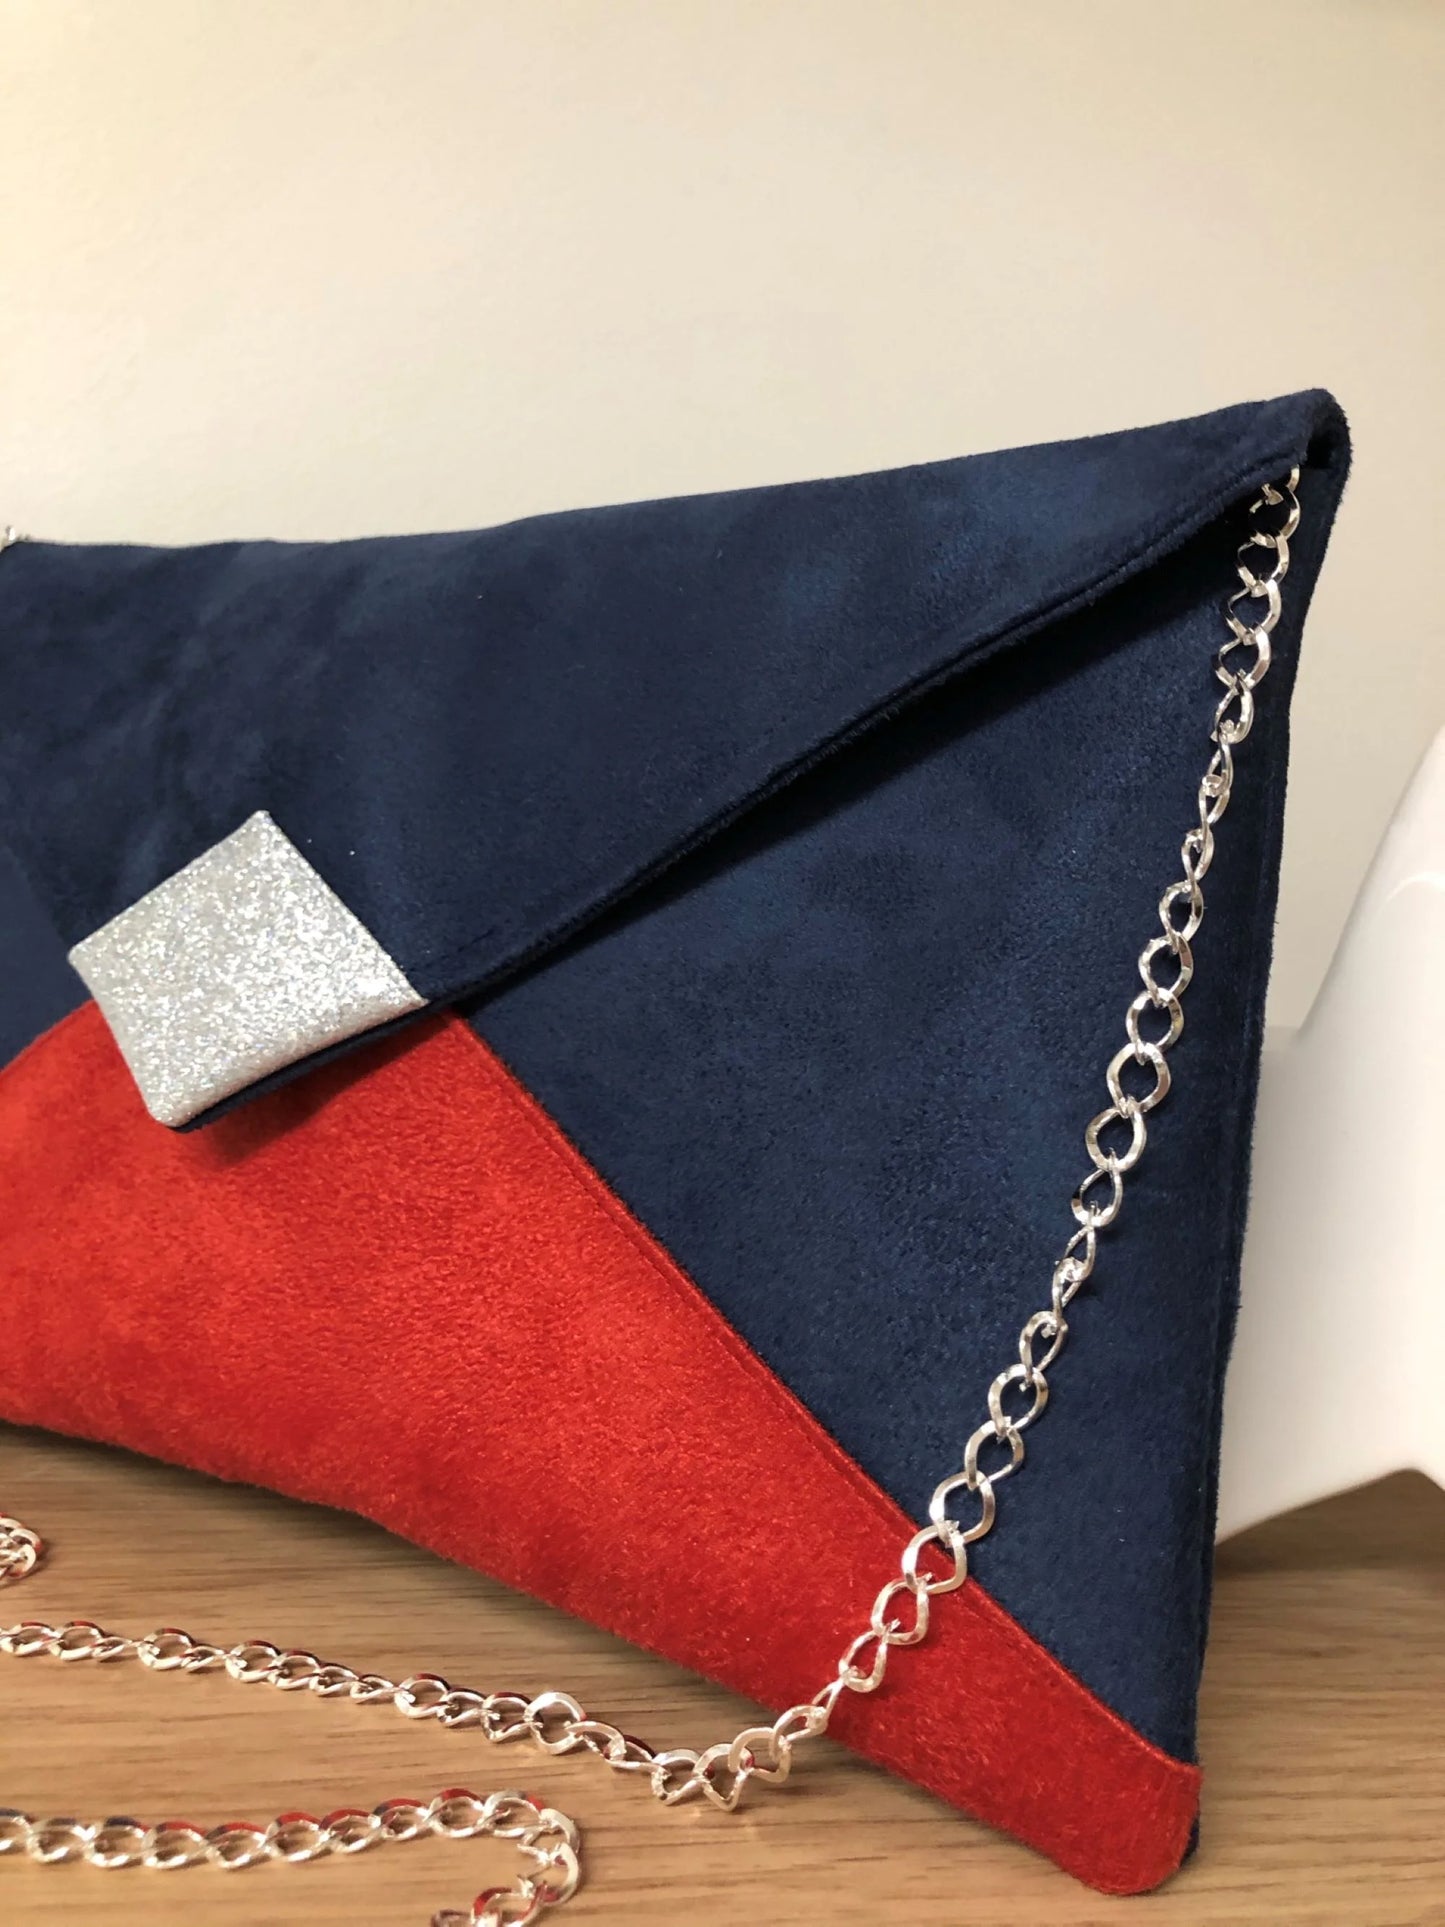 Le sac pochette Isa bleu marine et rouge à paillettes argentées avec chainette amovible.